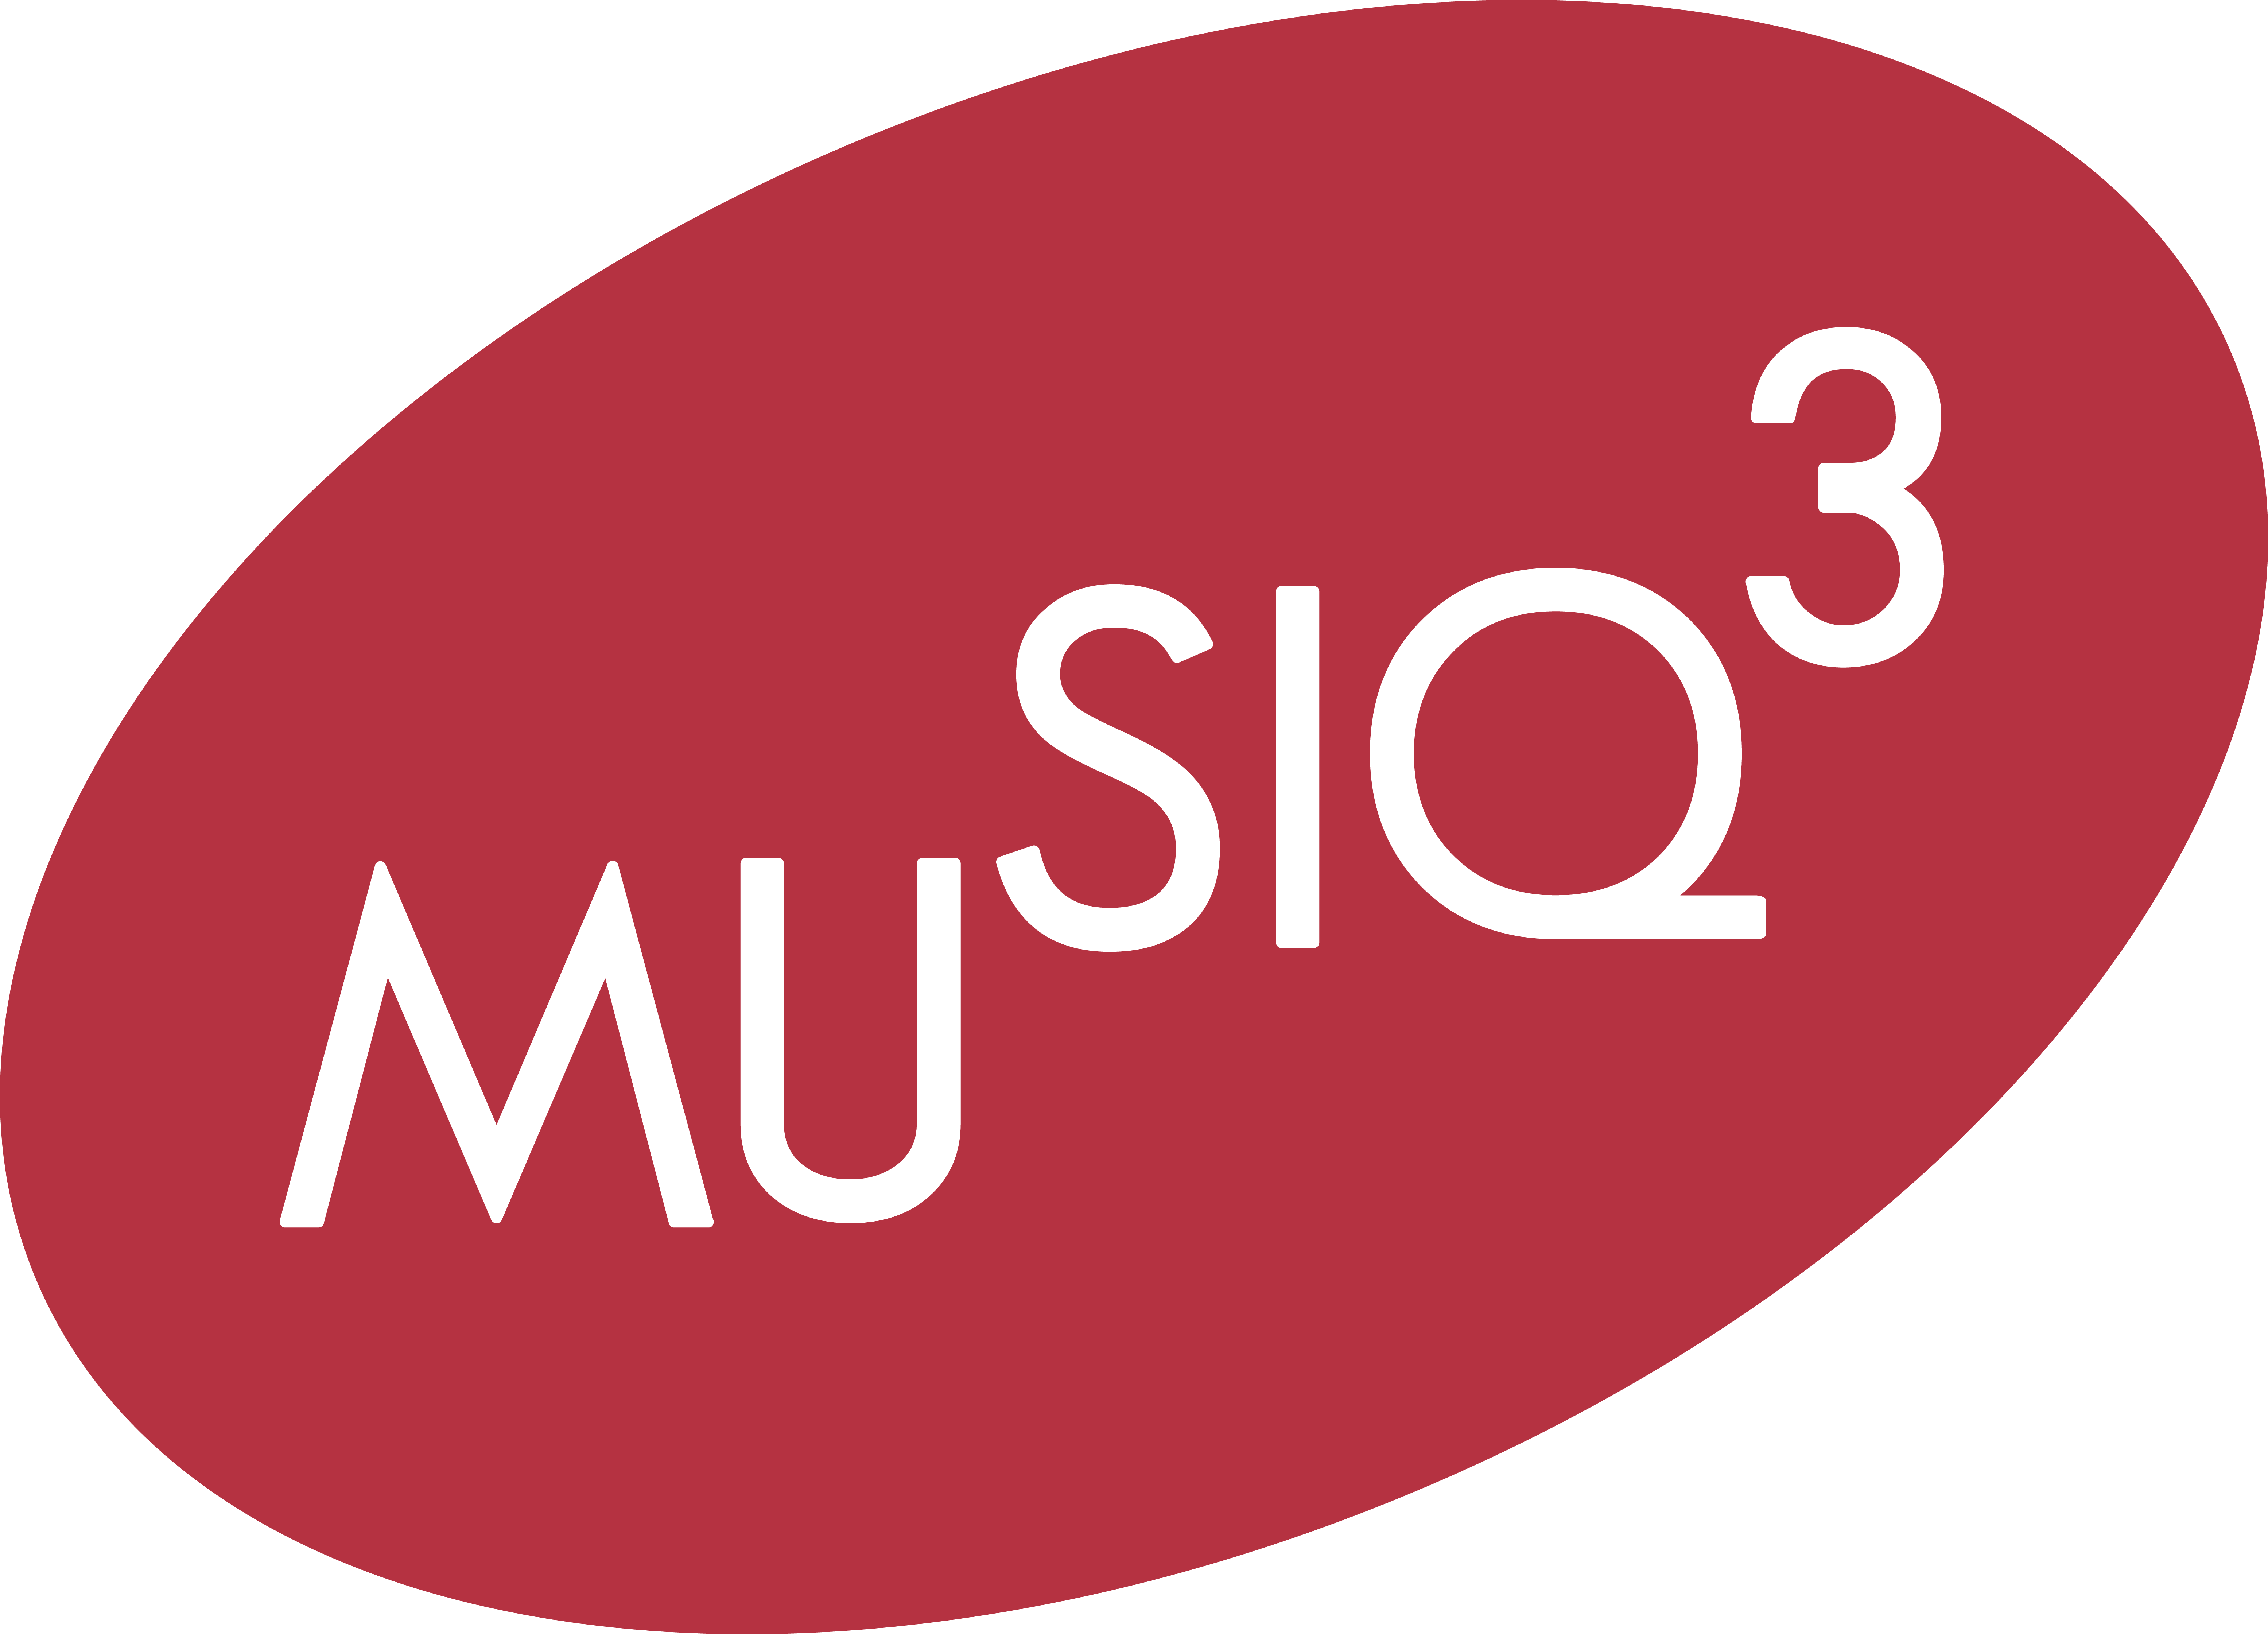 Musiq 3